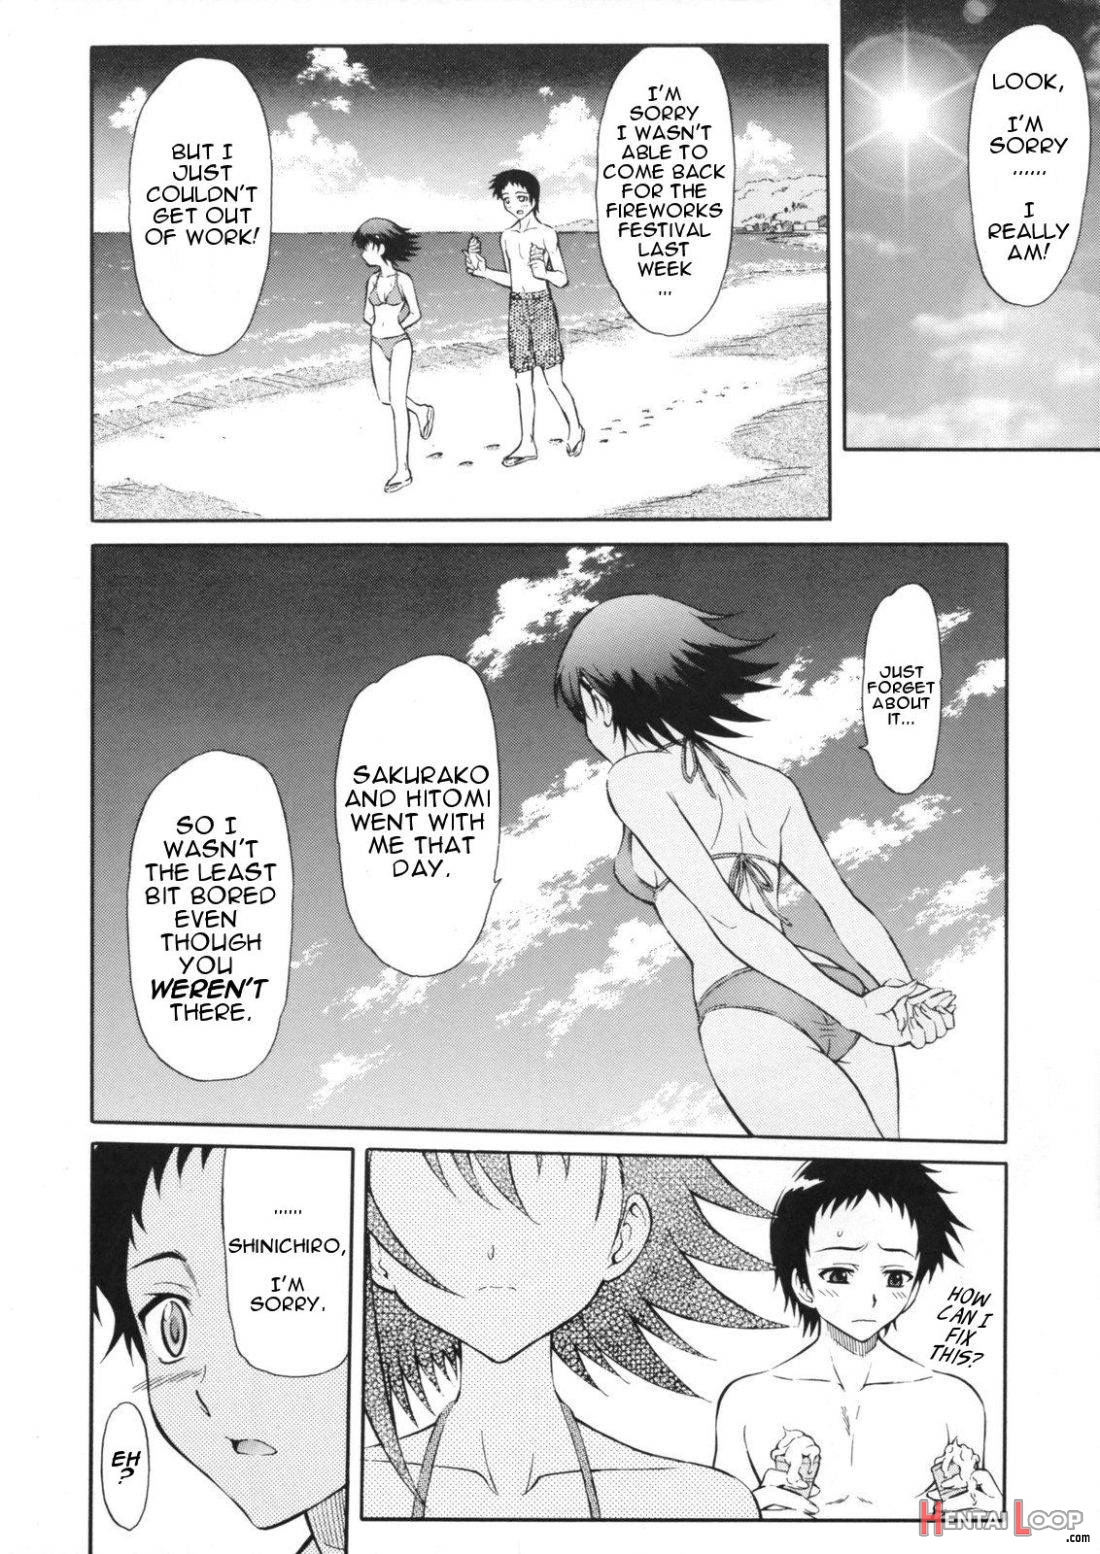 Tenshi no Namida 2 page 3